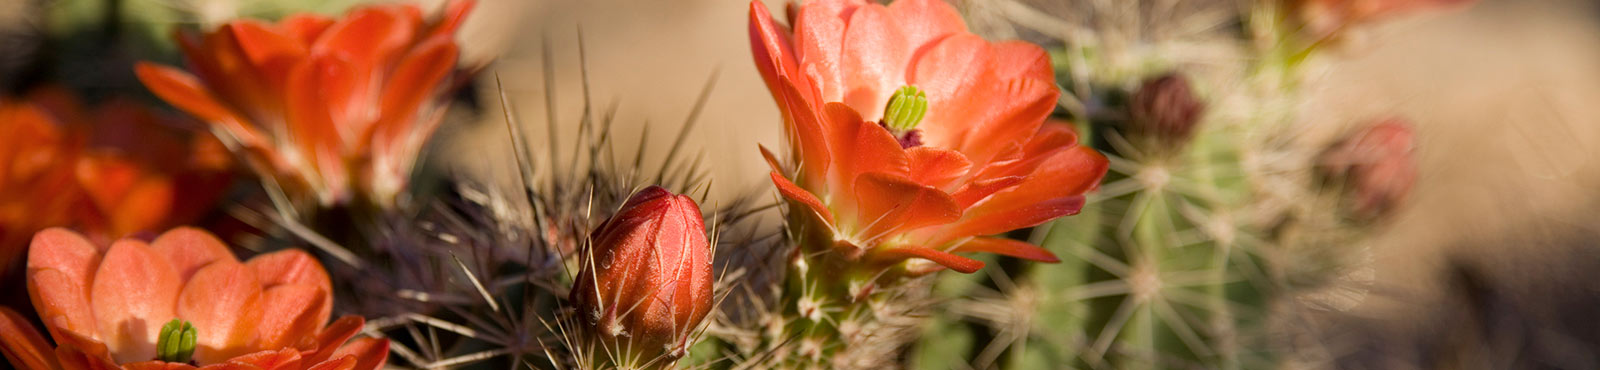 cactus flowers up close